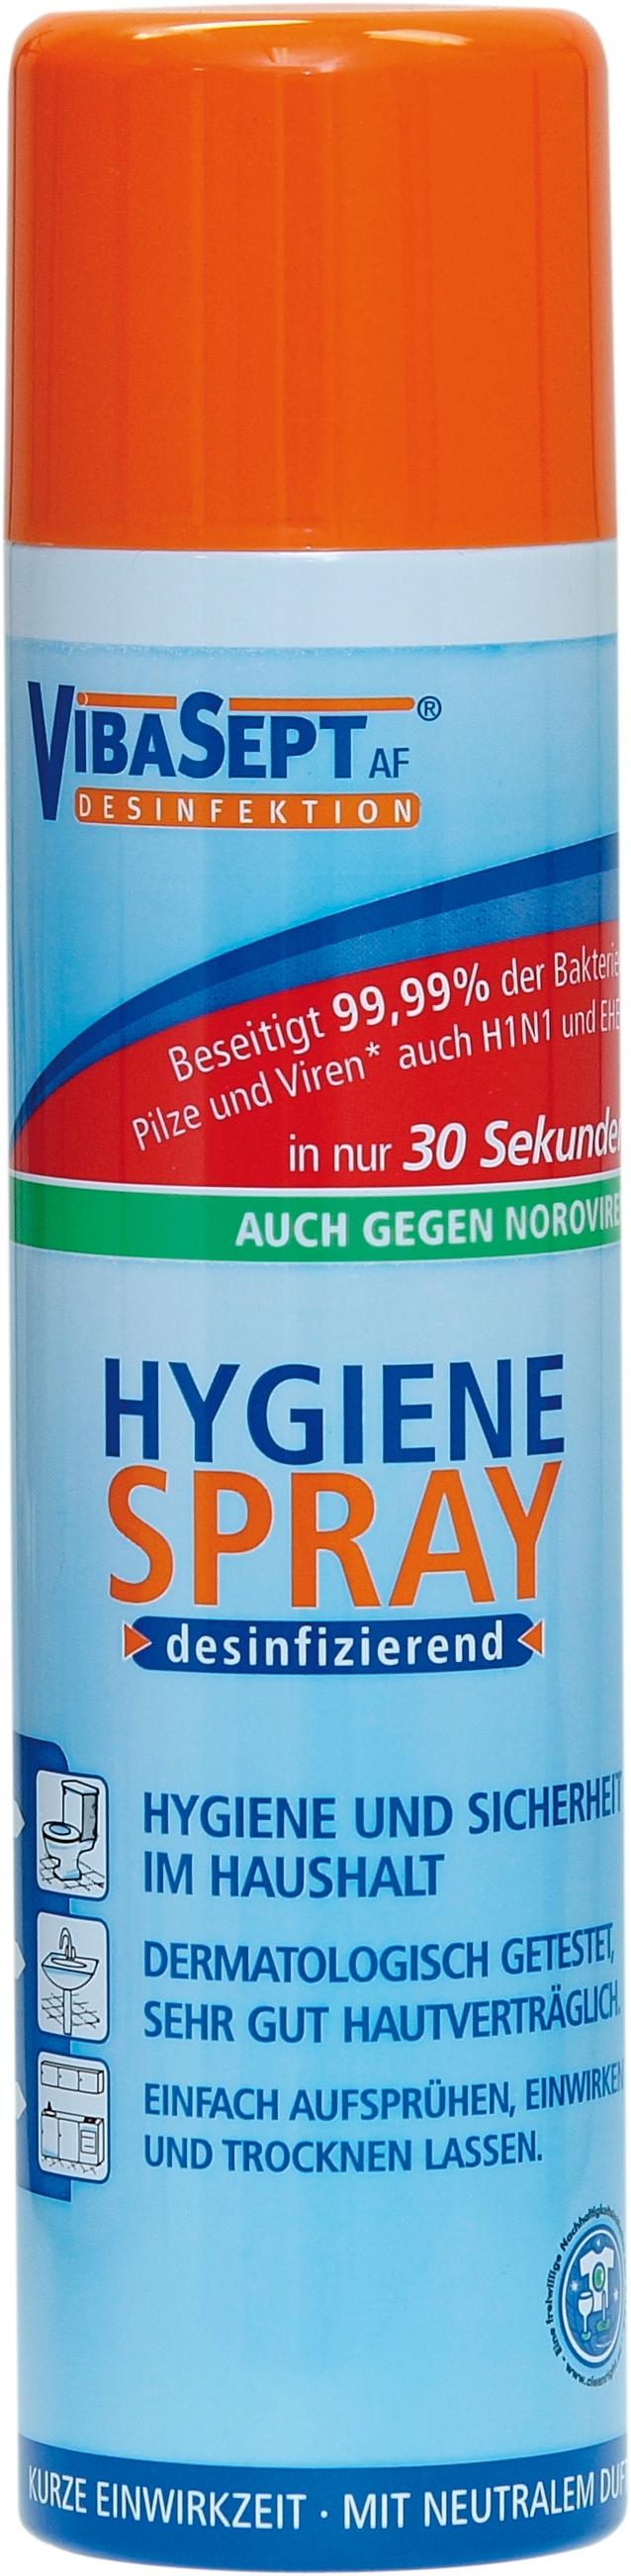 60060 - VibaSept Hygiene Spray 400 ml